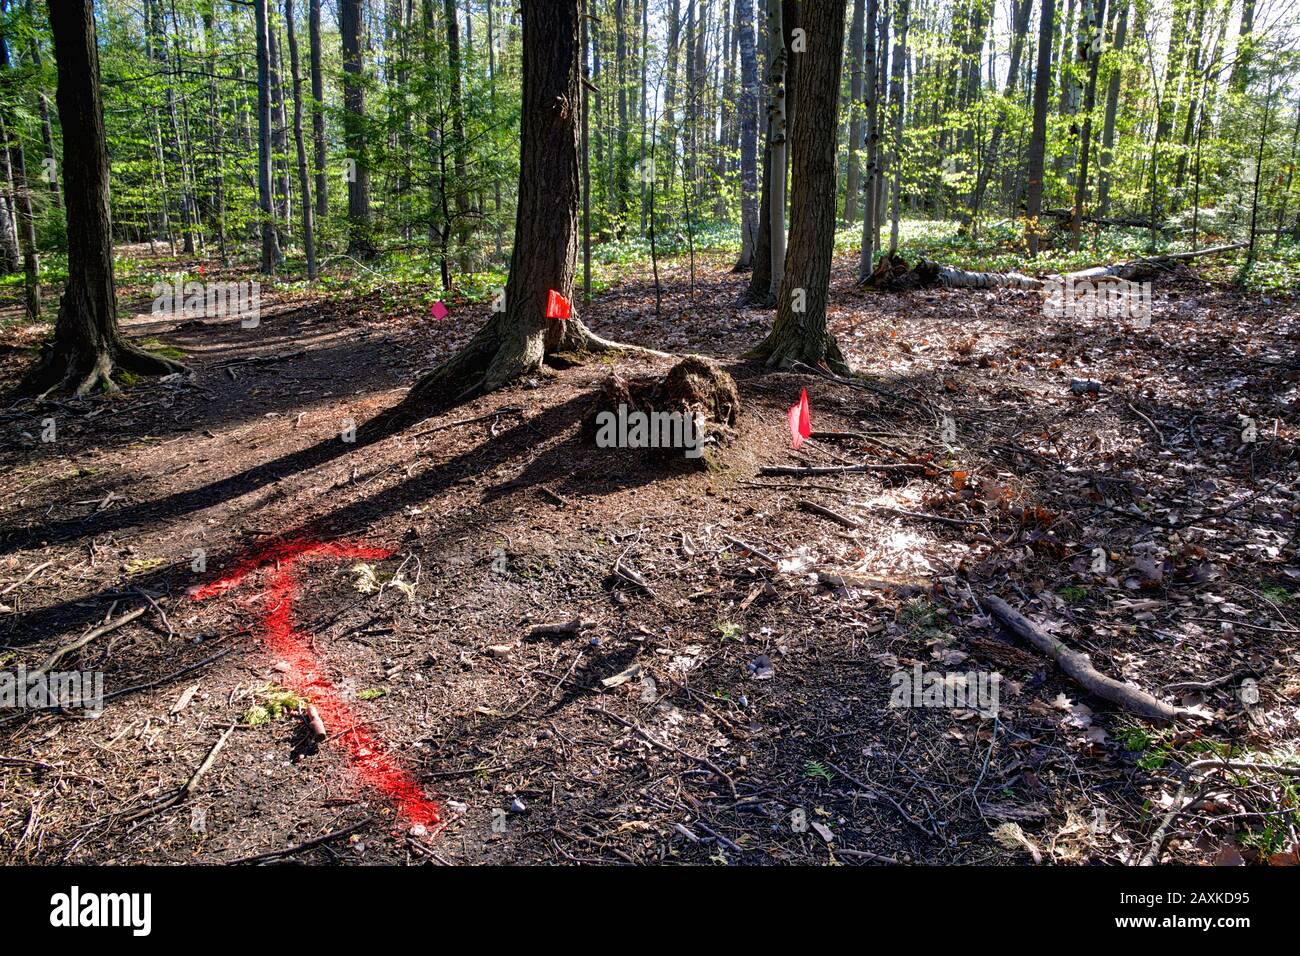 Schild und Fahne, die vor dem Baumschnitt aufstehen - Abholzung Stockfoto